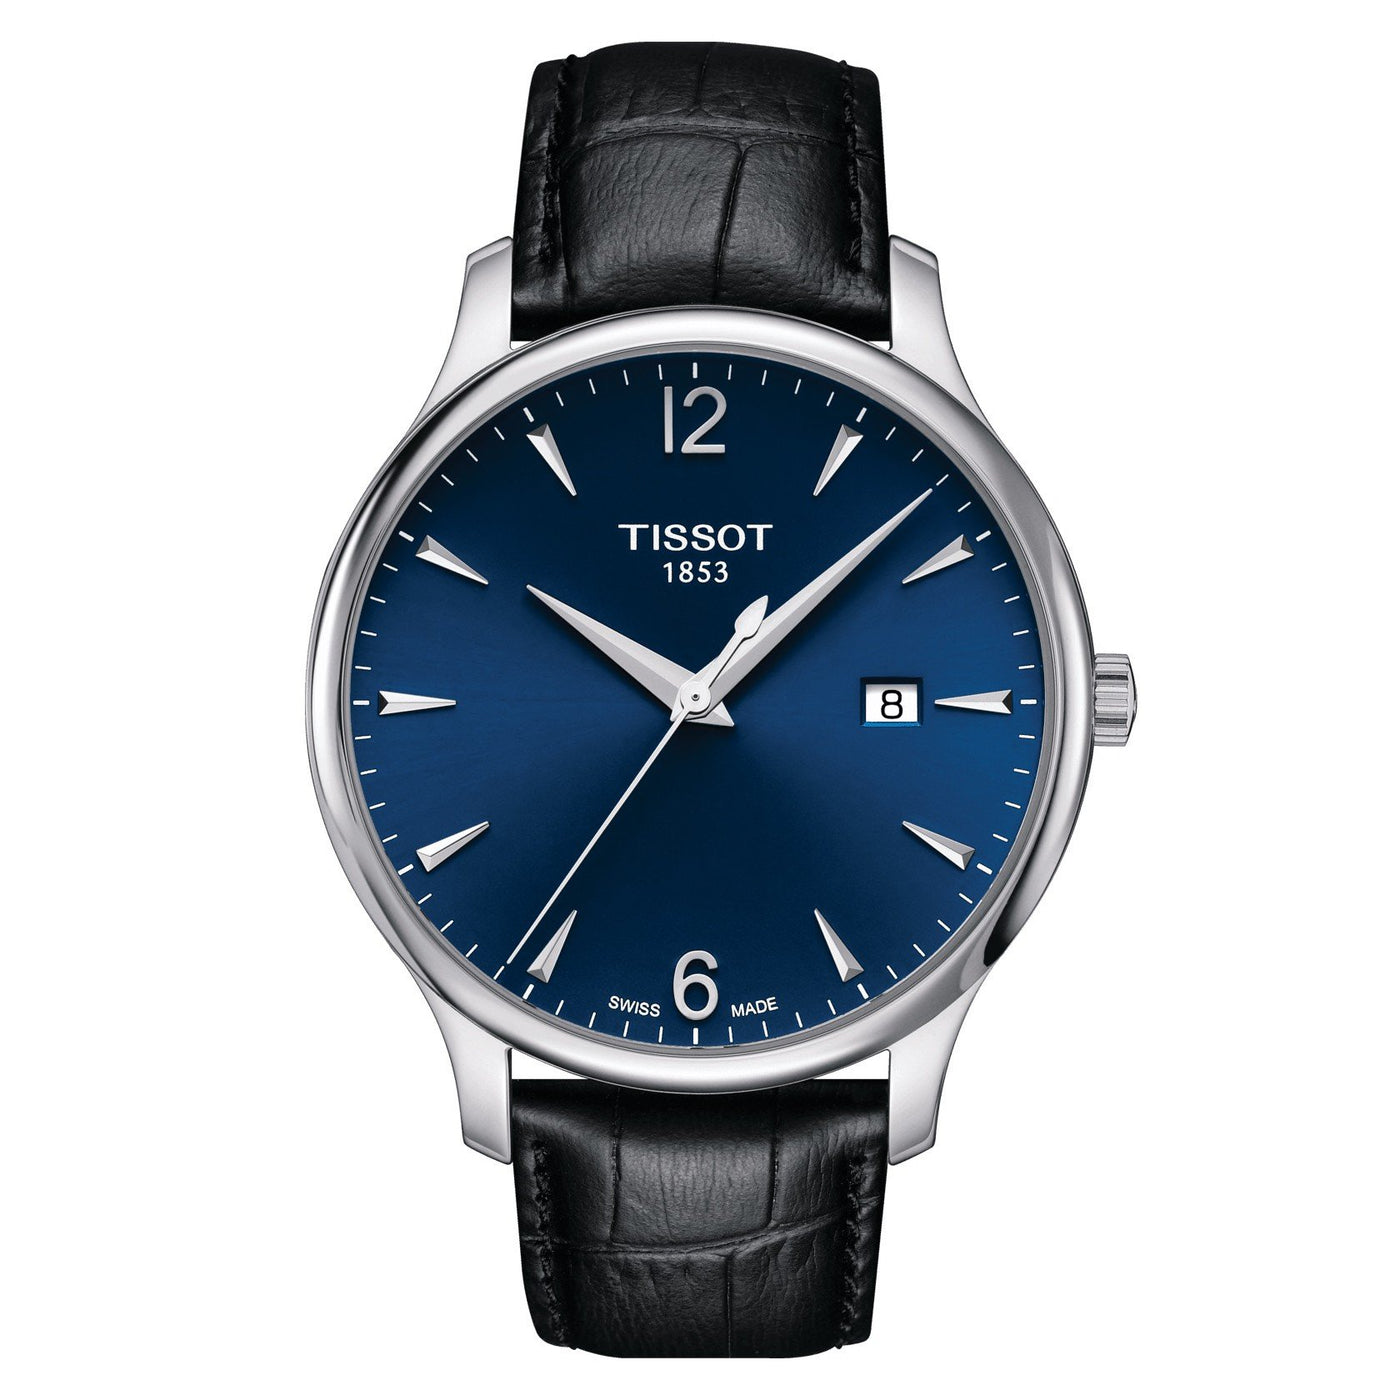 Tissot orologio uomo Tradition blu 42mm acciaio quarzo T063.610.16.047.00 - Gioielleria Capodagli